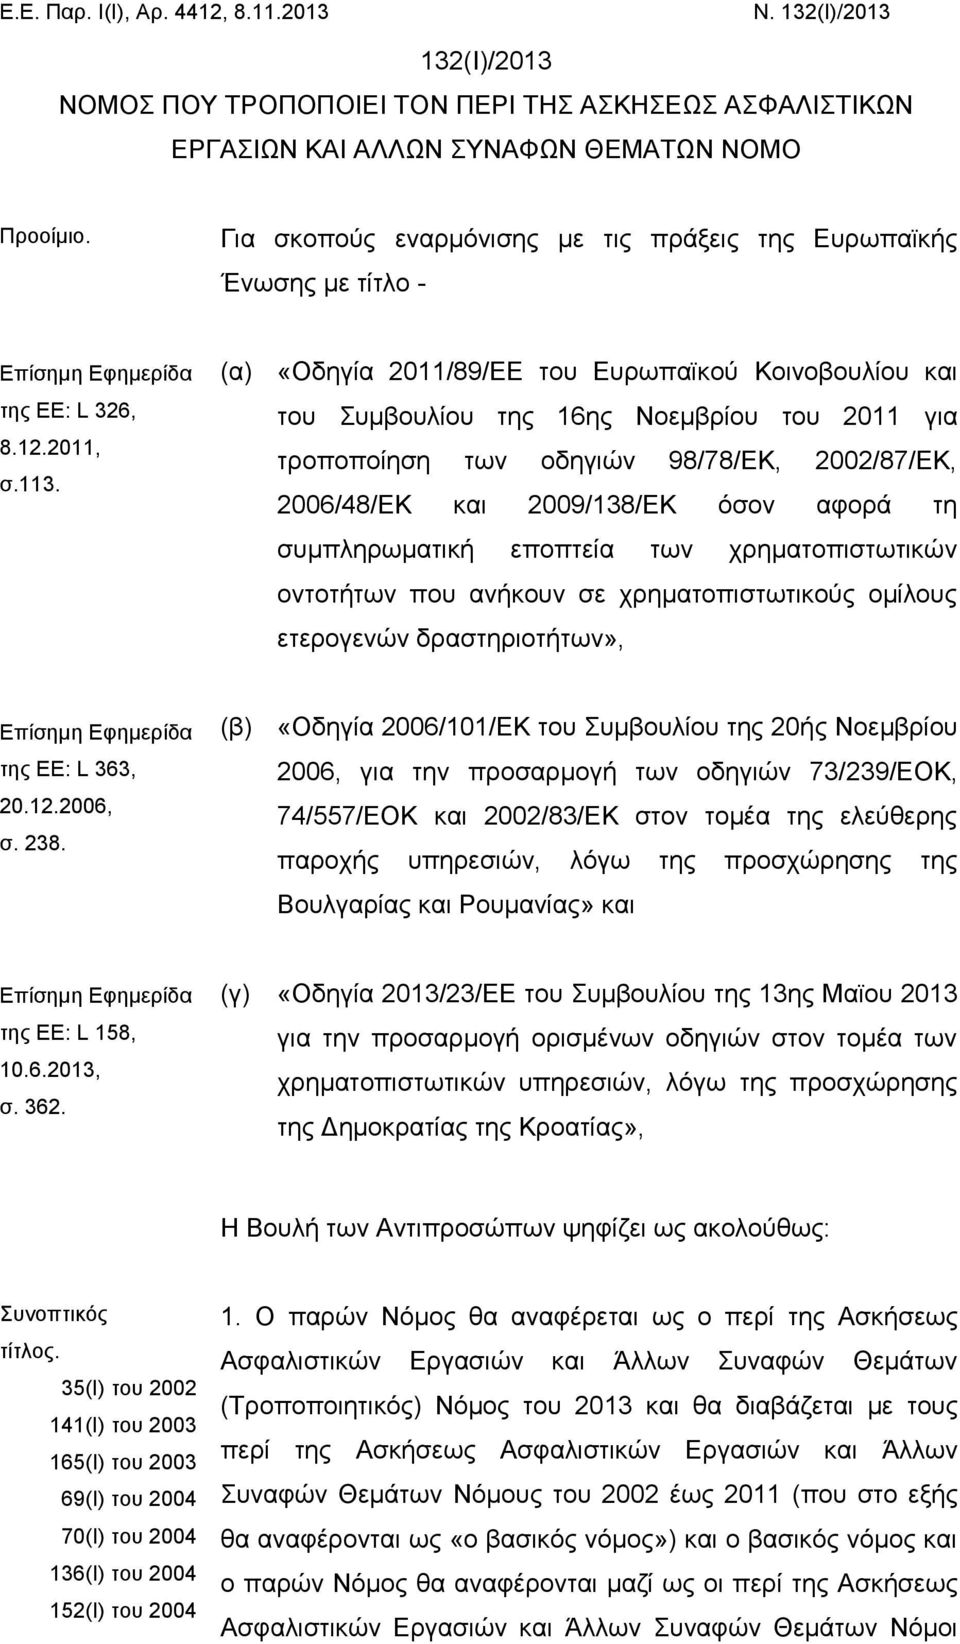 (α) «Οδηγία 2011/89/ΕΕ του Ευρωπαϊκού Κοινοβουλίου και του Συμβουλίου της 16ης Νοεμβρίου του 2011 για τροποποίηση των οδηγιών 98/78/ΕΚ, 2002/87/ΕΚ, 2006/48/ΕΚ και 2009/138/ΕΚ όσον αφορά τη